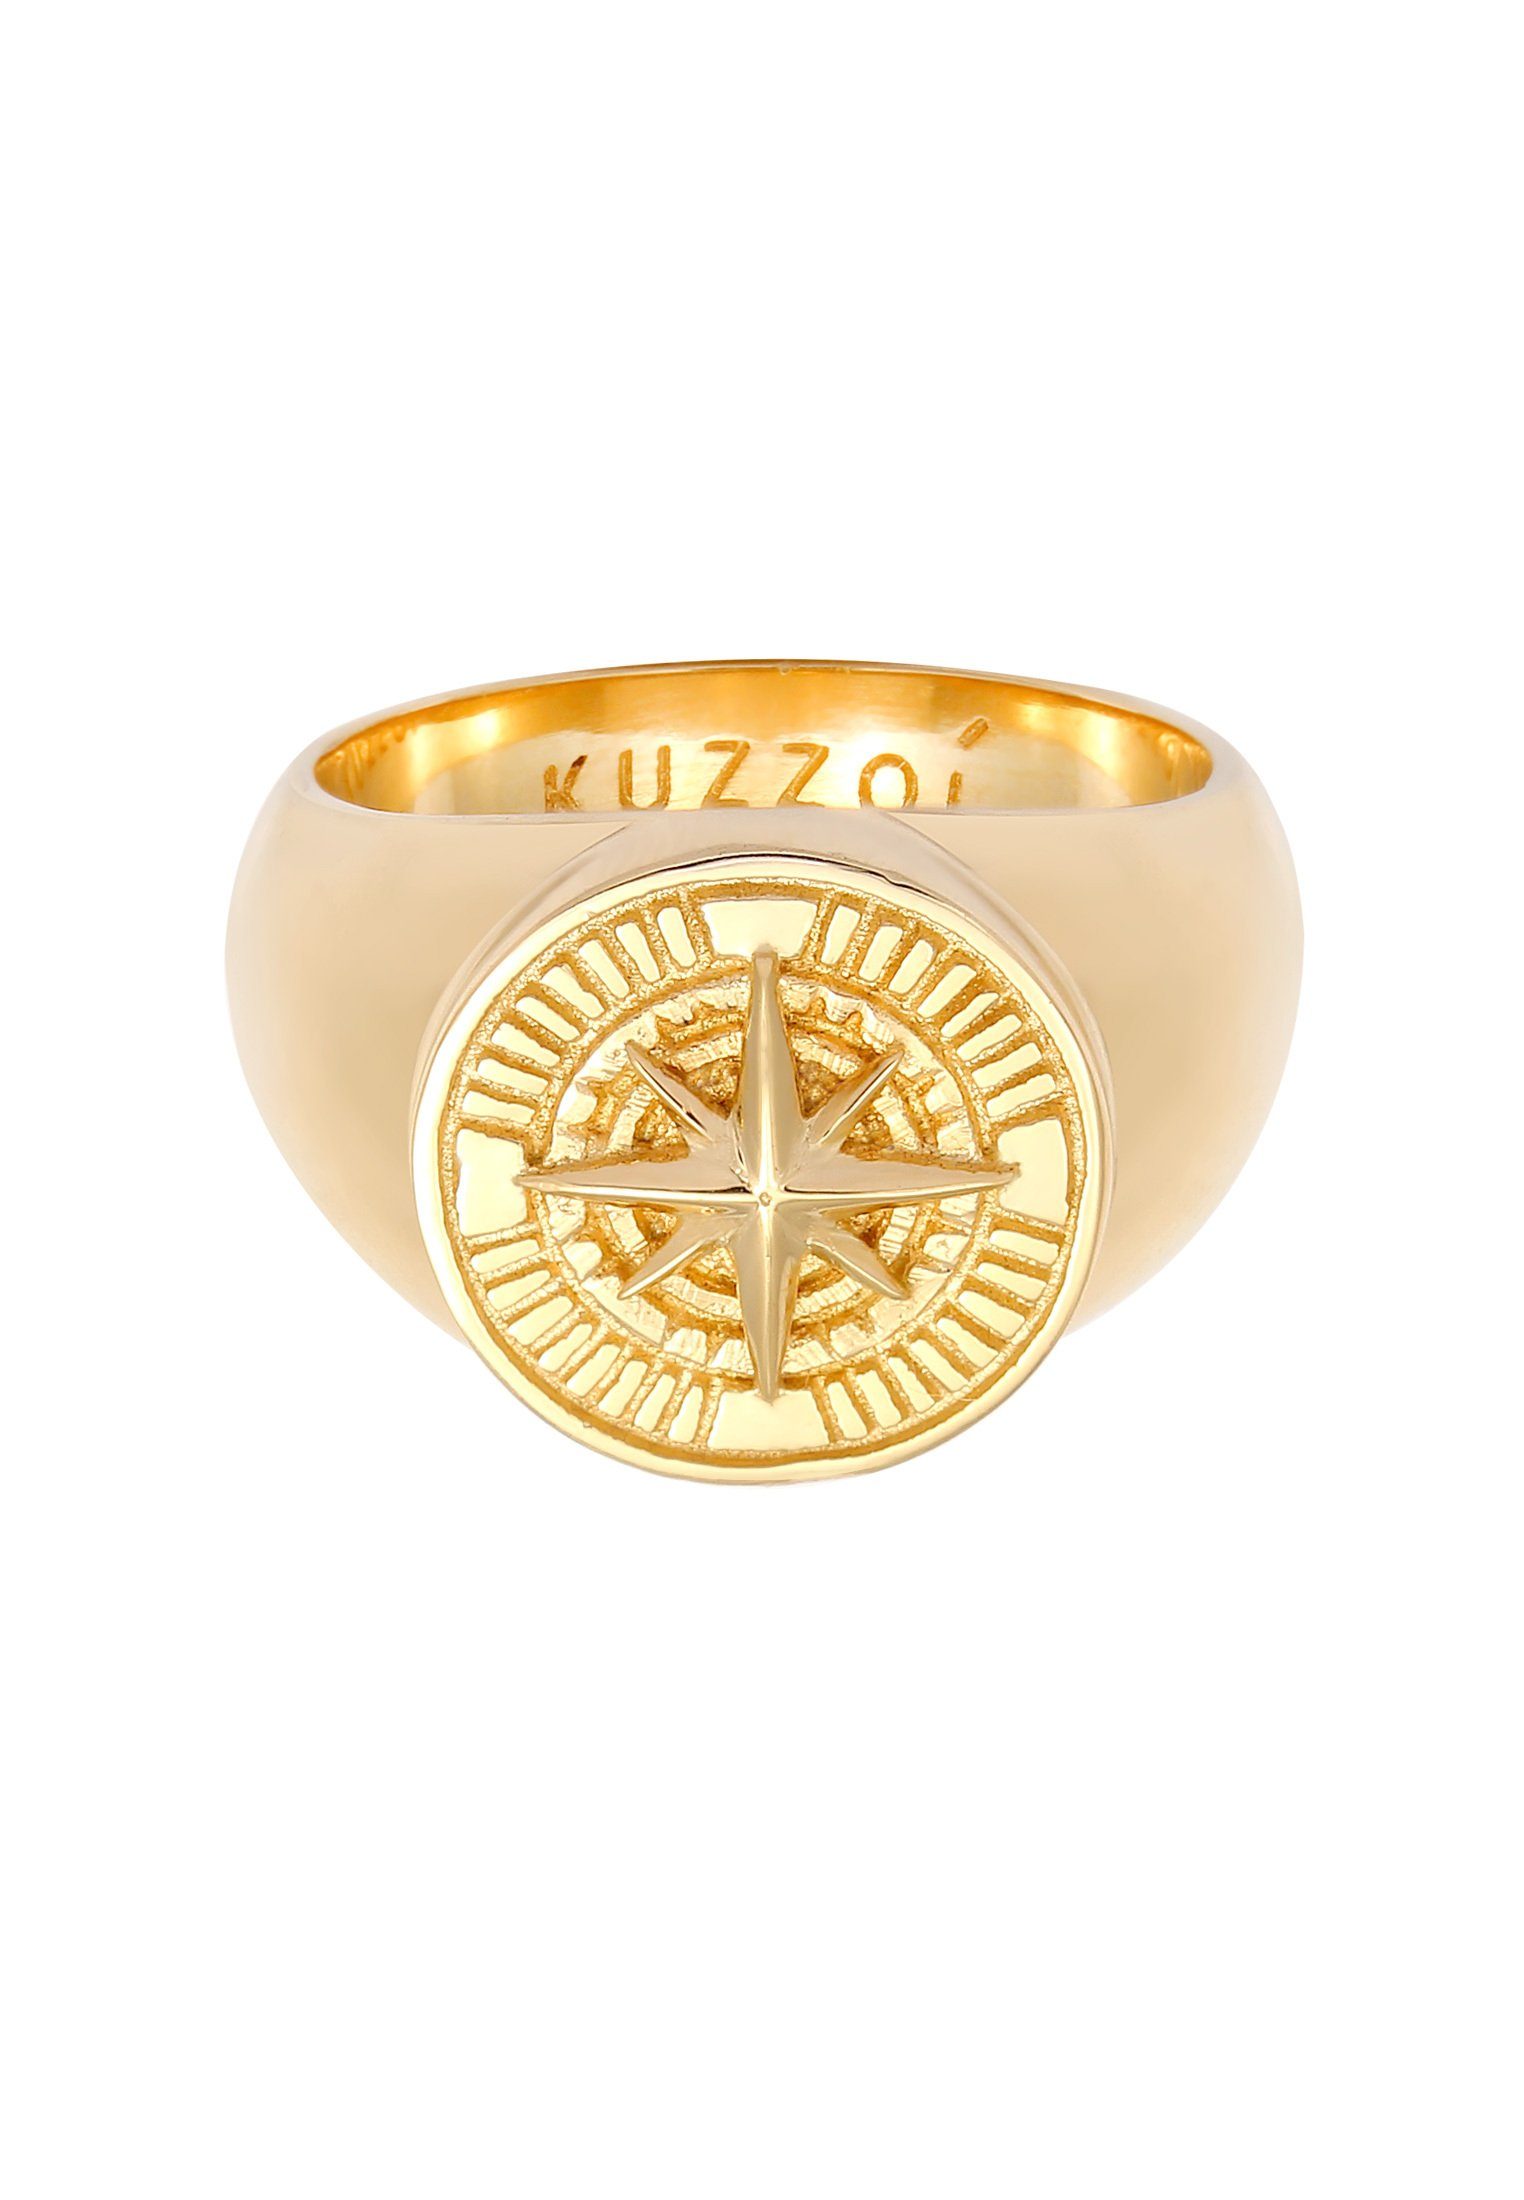 Gold 925 Silber Kuzzoi Siegelring Herren Siegelring Kompass